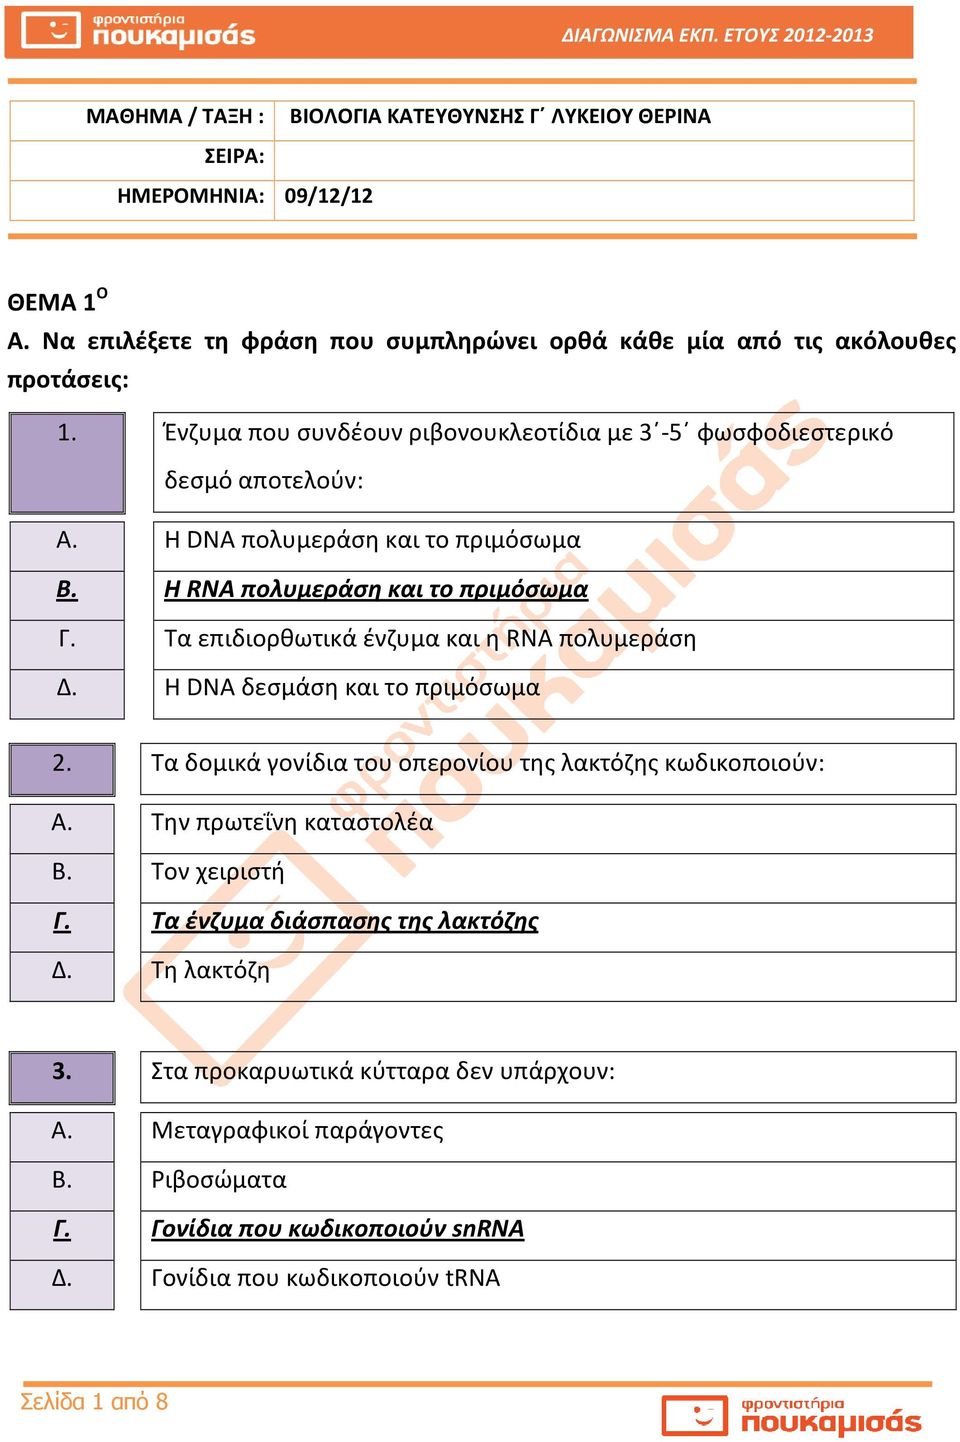 Τα επιδιορθωτικά ένζυμα και η RNA πολυμεράση Δ. Η DNA δεσμάση και το πριμόσωμα 2. Τα δομικά γονίδια του οπερονίου της λακτόζης κωδικοποιούν: Α. Την πρωτεΐνη καταστολέα Β.